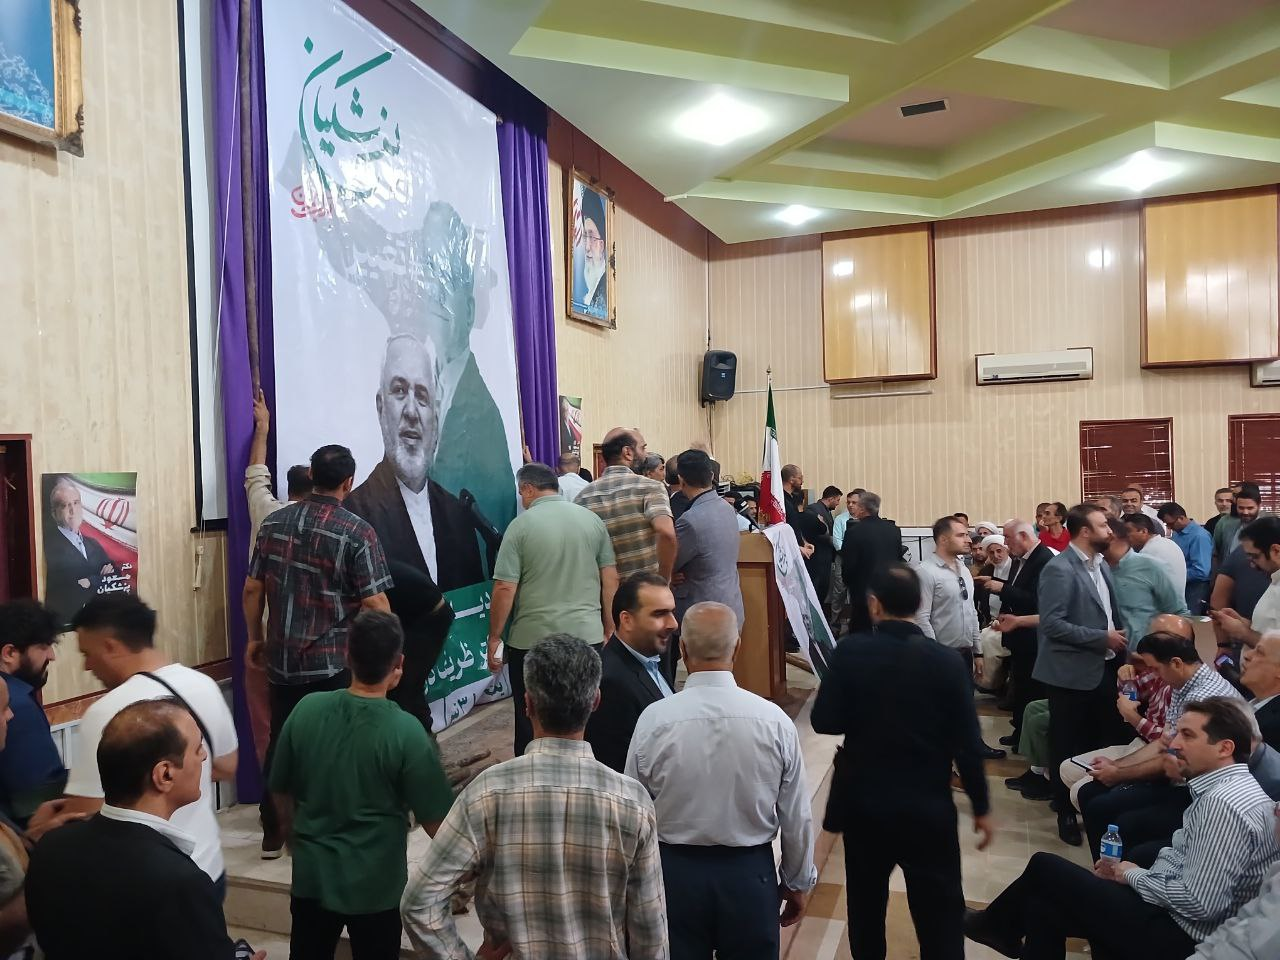 گروه های فشار جلسه سخنرانی ظریف در مازندران را هم به تنش کشاندند